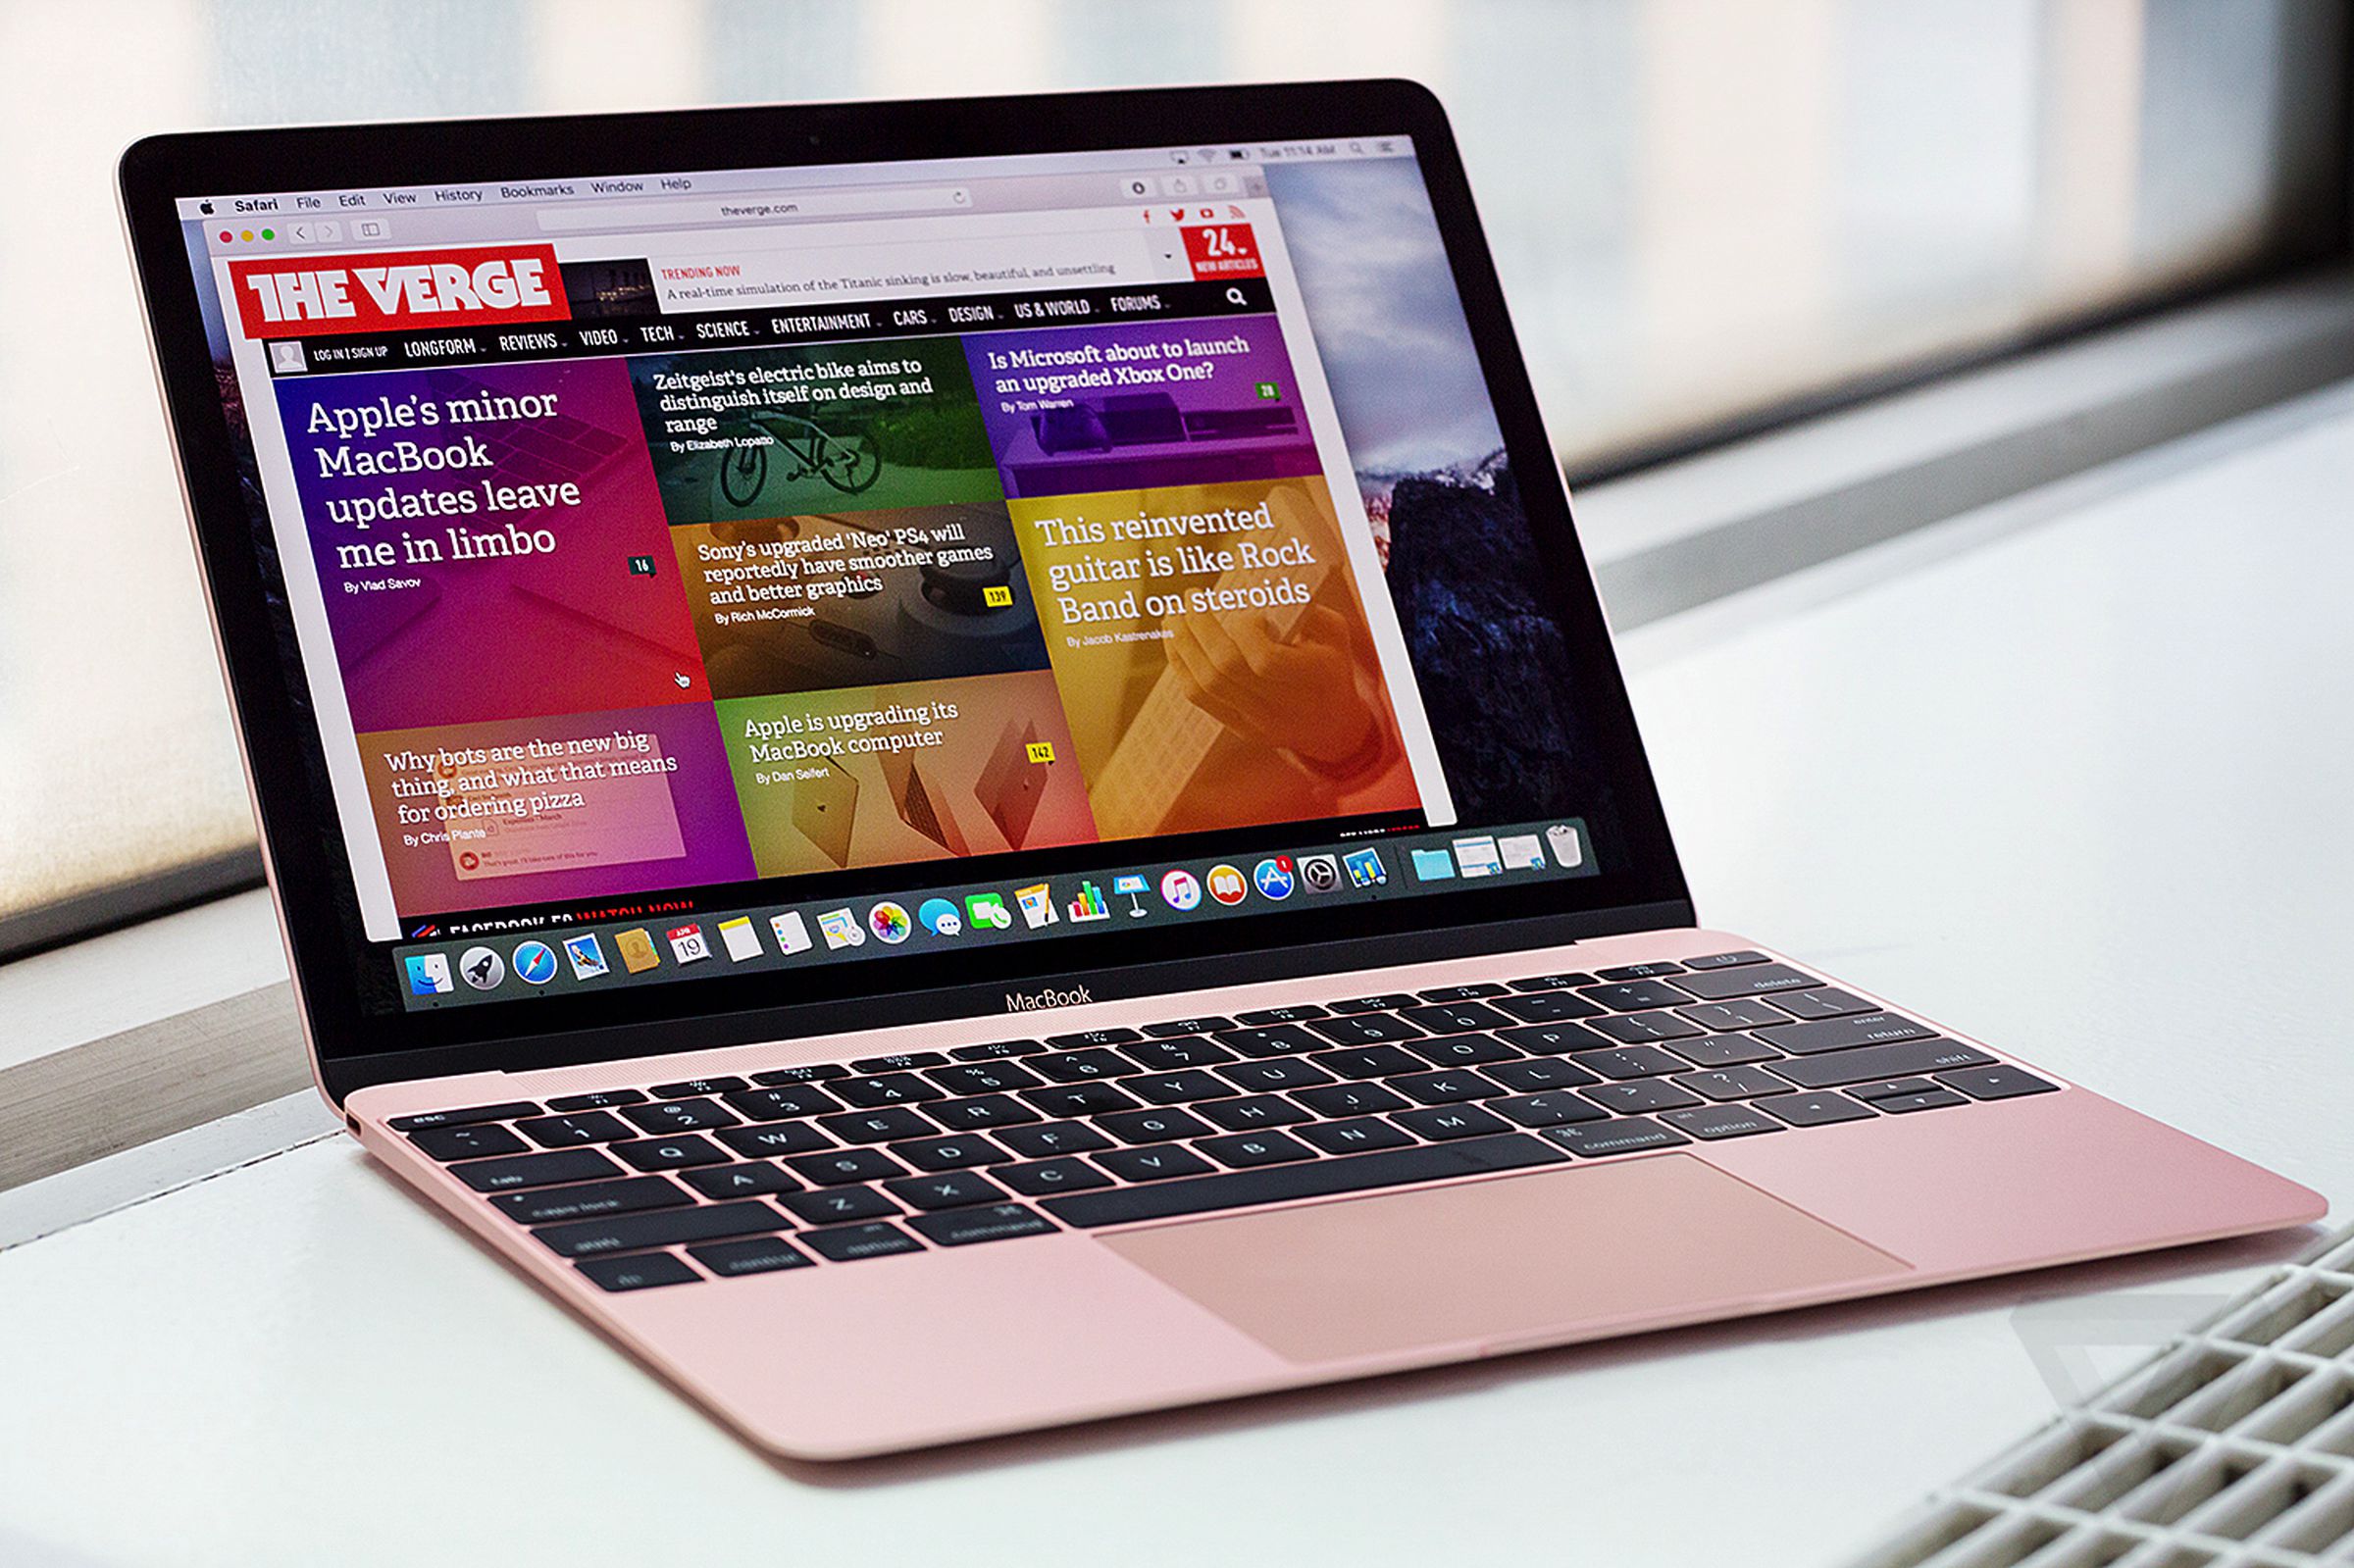 New MacBook 2016 hands-on photos